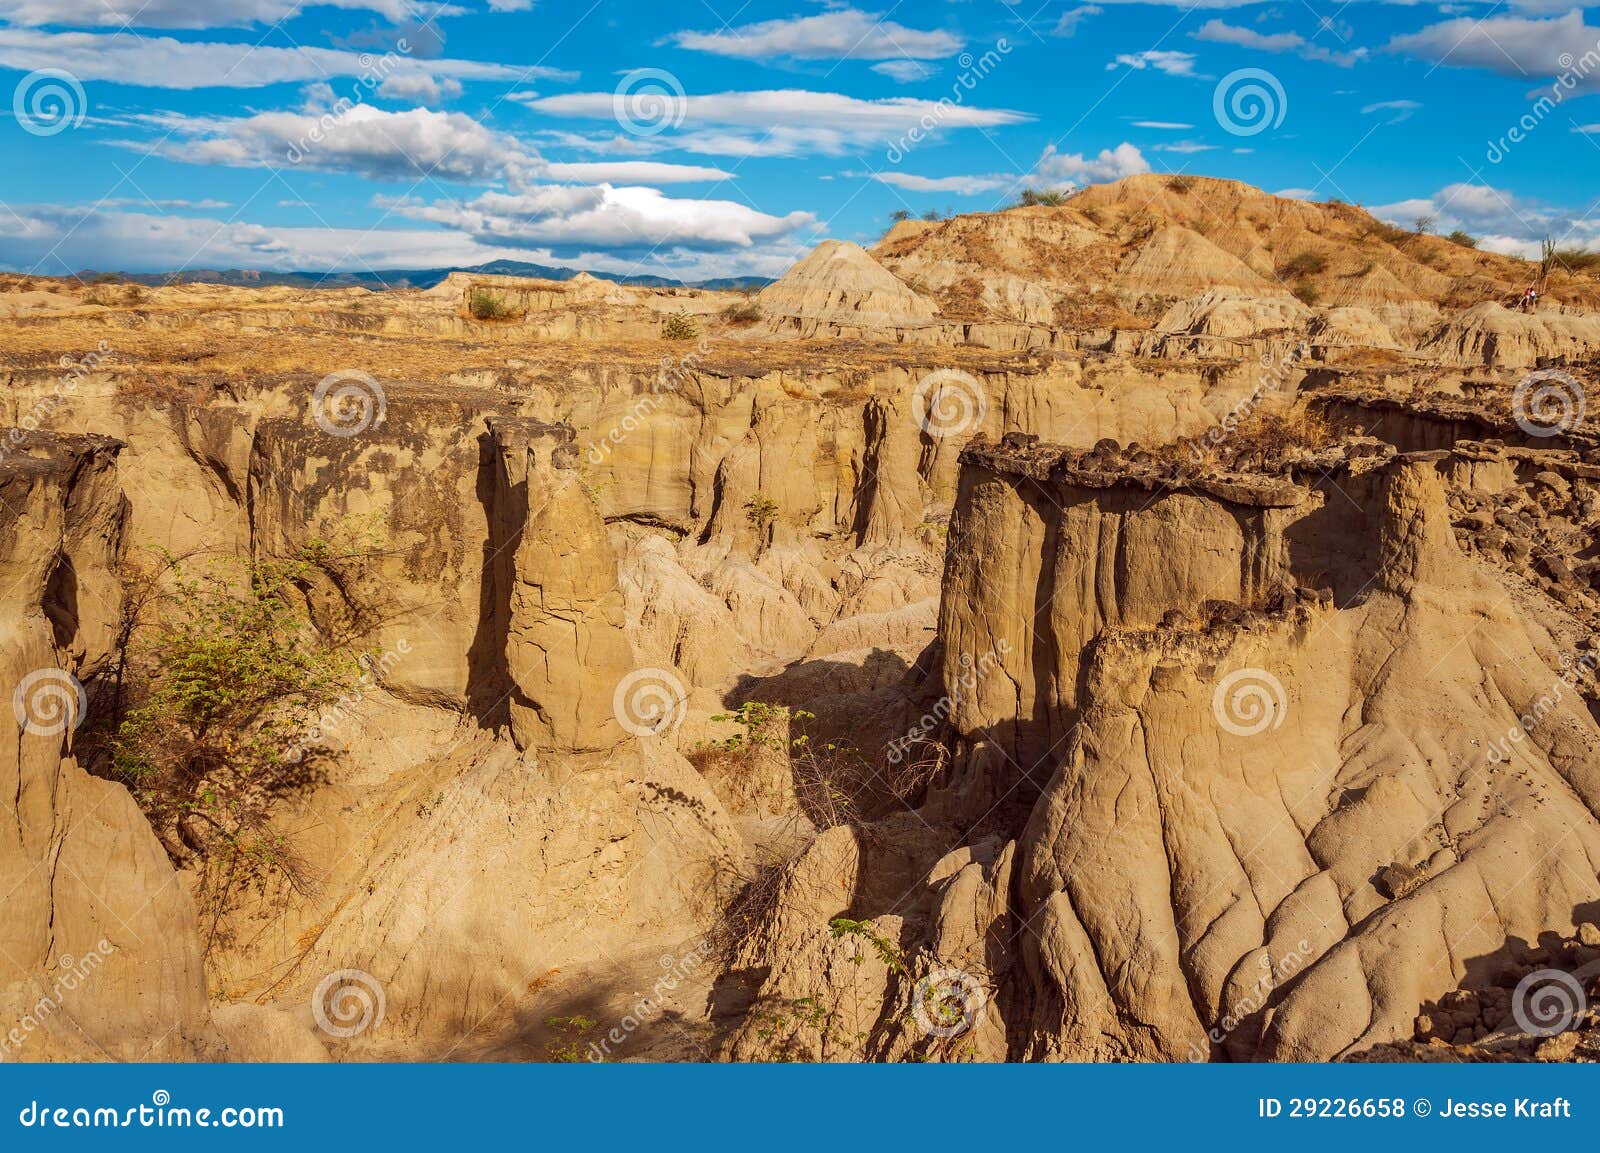 desolate desert canyon